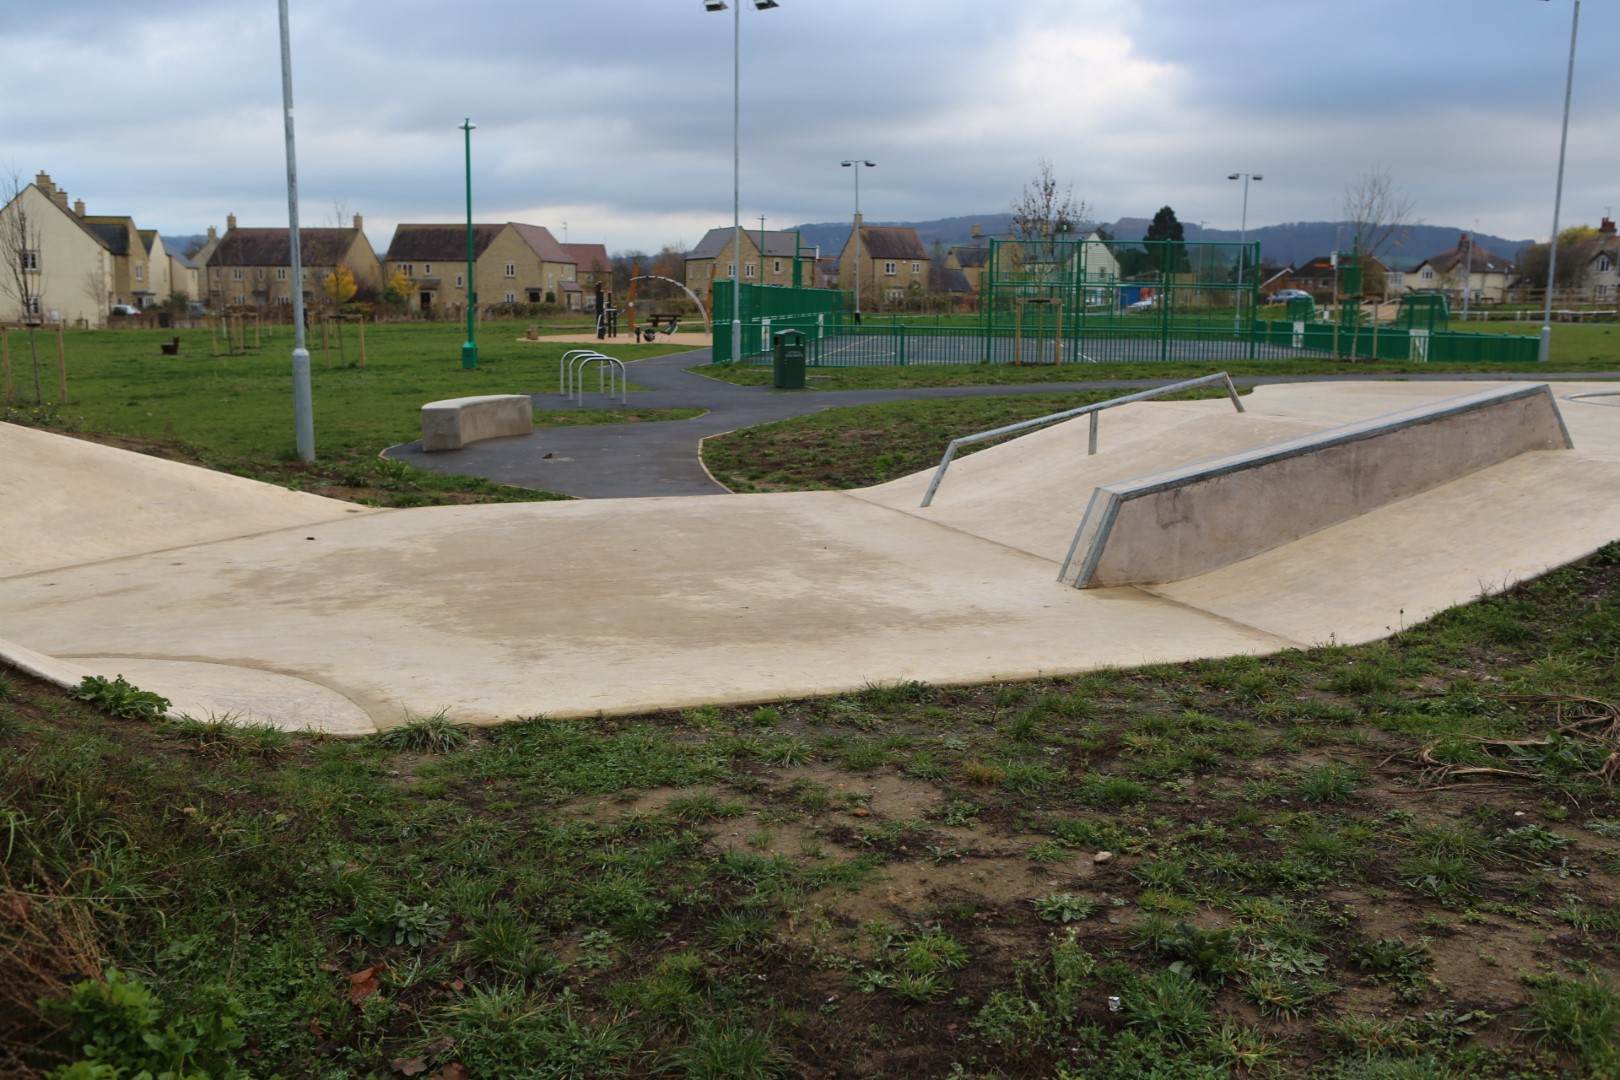 Winchcombe Skate Park